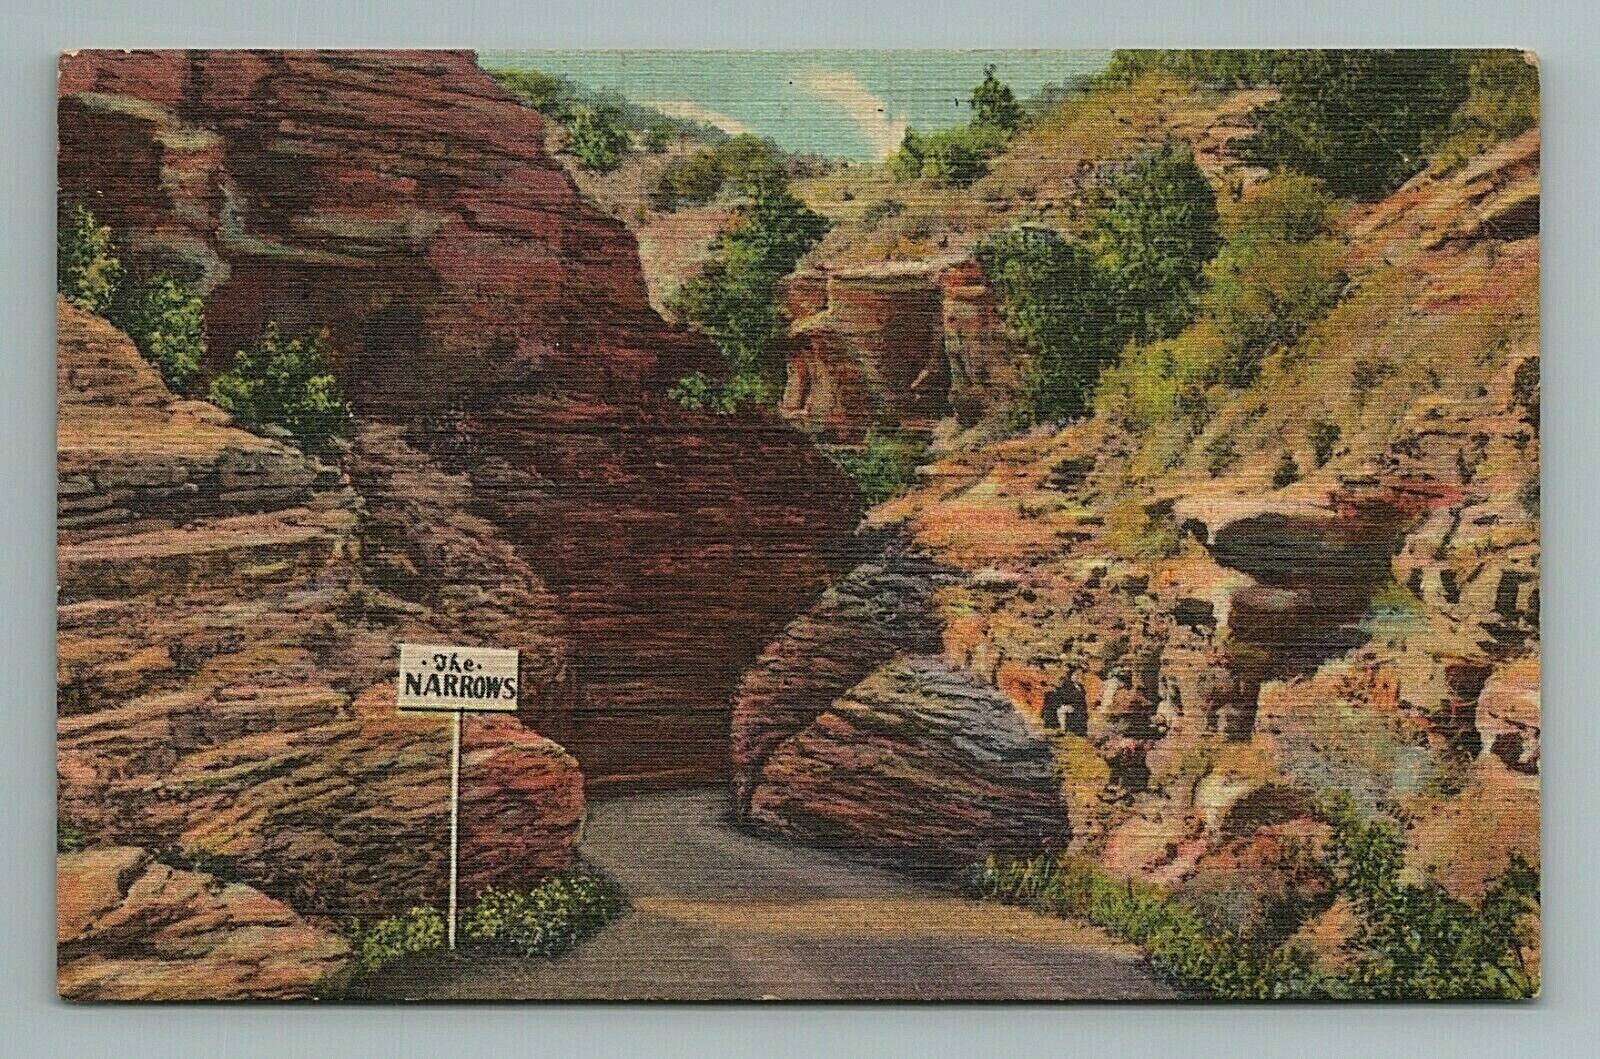 The Narrows, Williams Canon, Canyon, Colorado Postcard